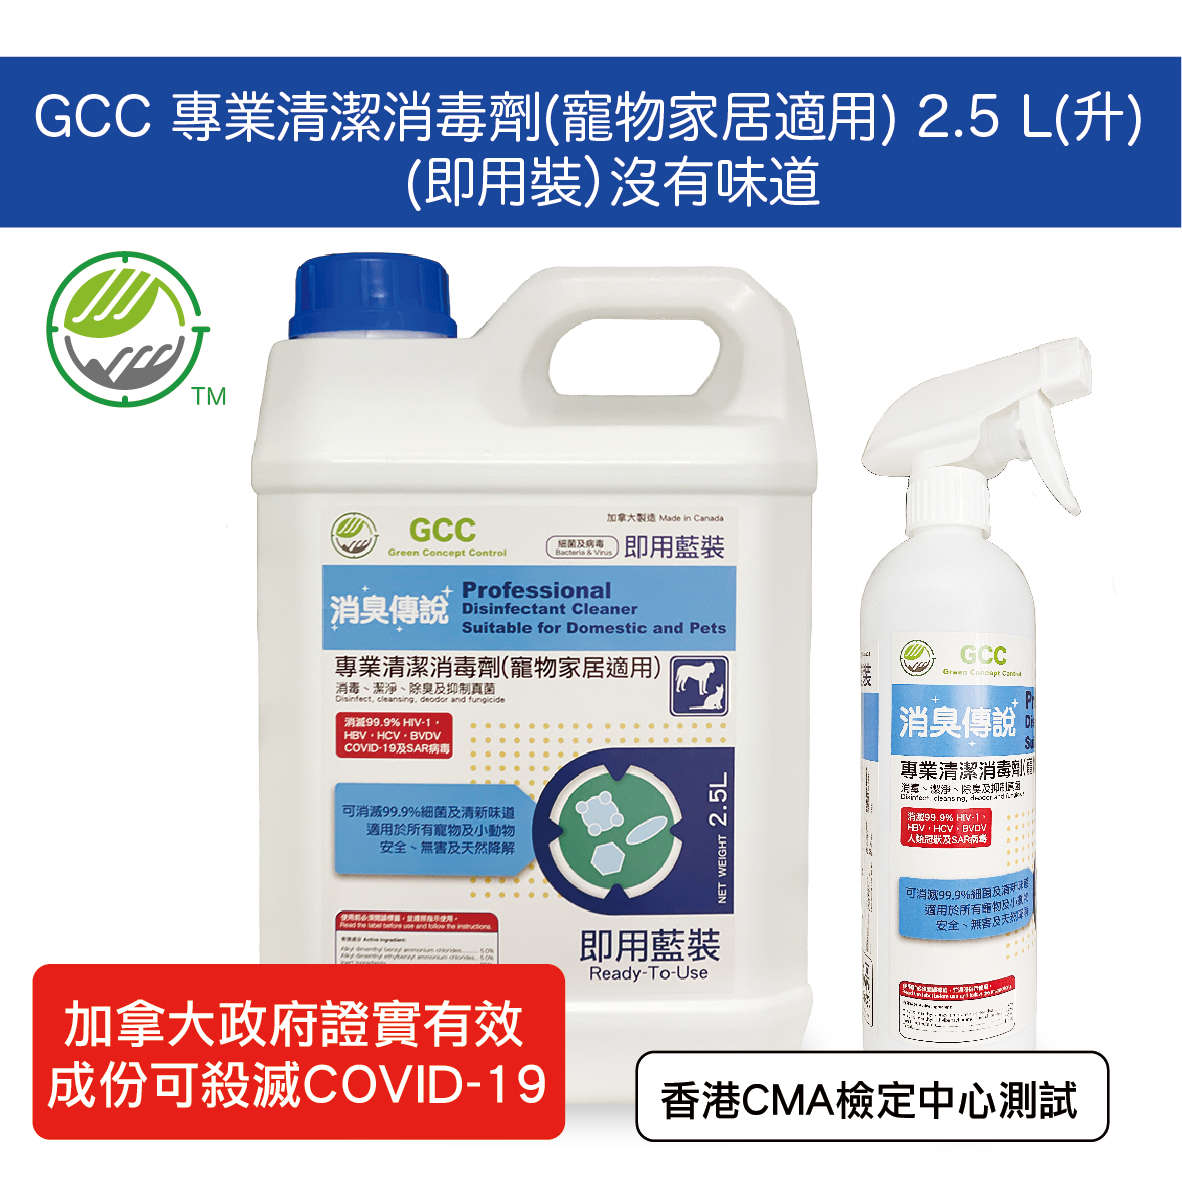 噴灑裝 (原味即用裝)專業清潔消毒劑 寵物家居適用 2.5L升 - 除臭 消毒 經香港CMA檢定中心安全測試